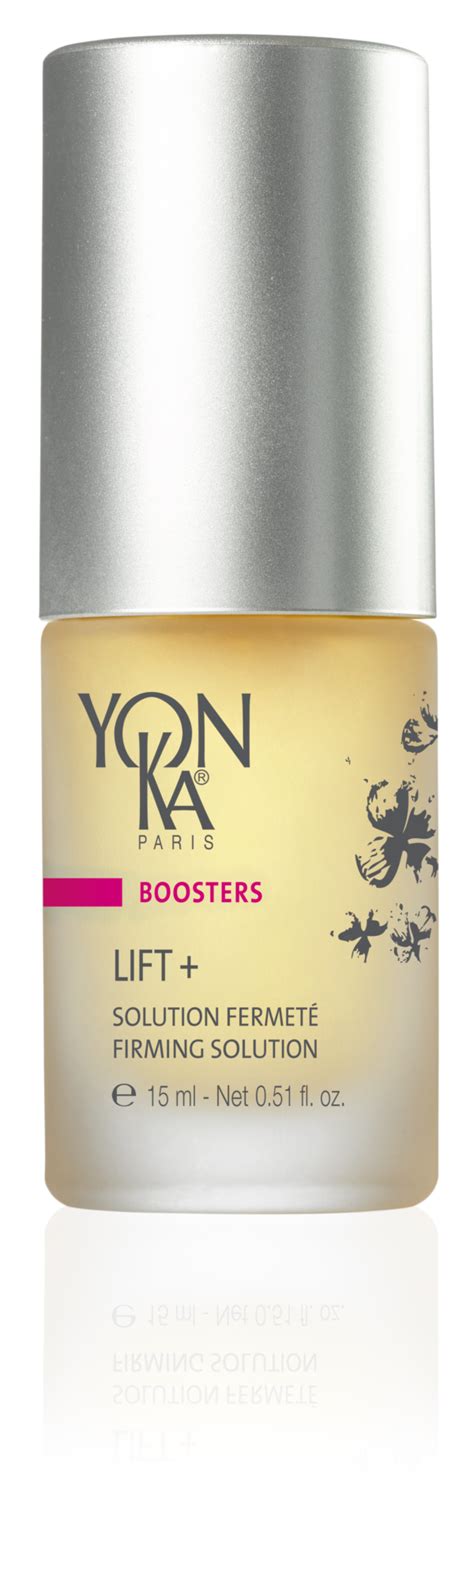 booster lift yonka boutique en ligne esthétique cliona